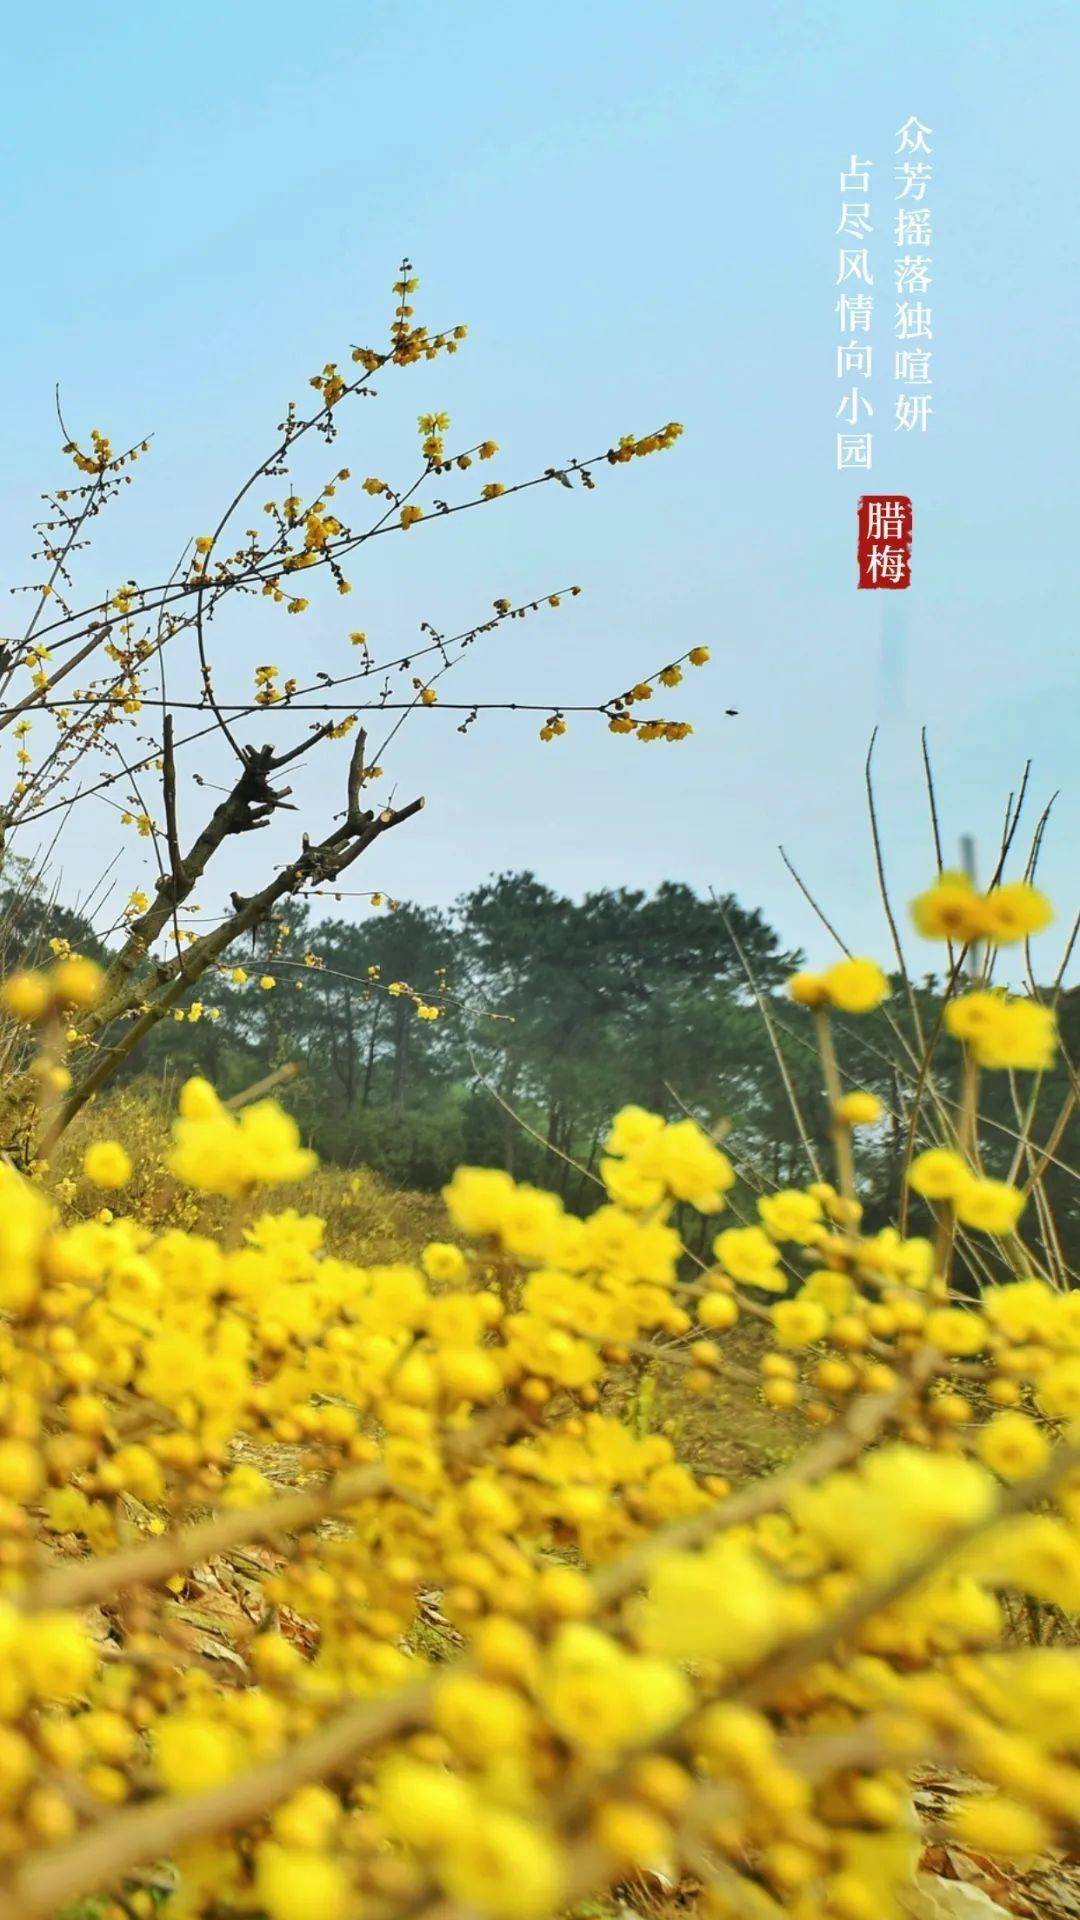 枝头|寒梅傲雪|重庆南山暗香浮动“花袭人”